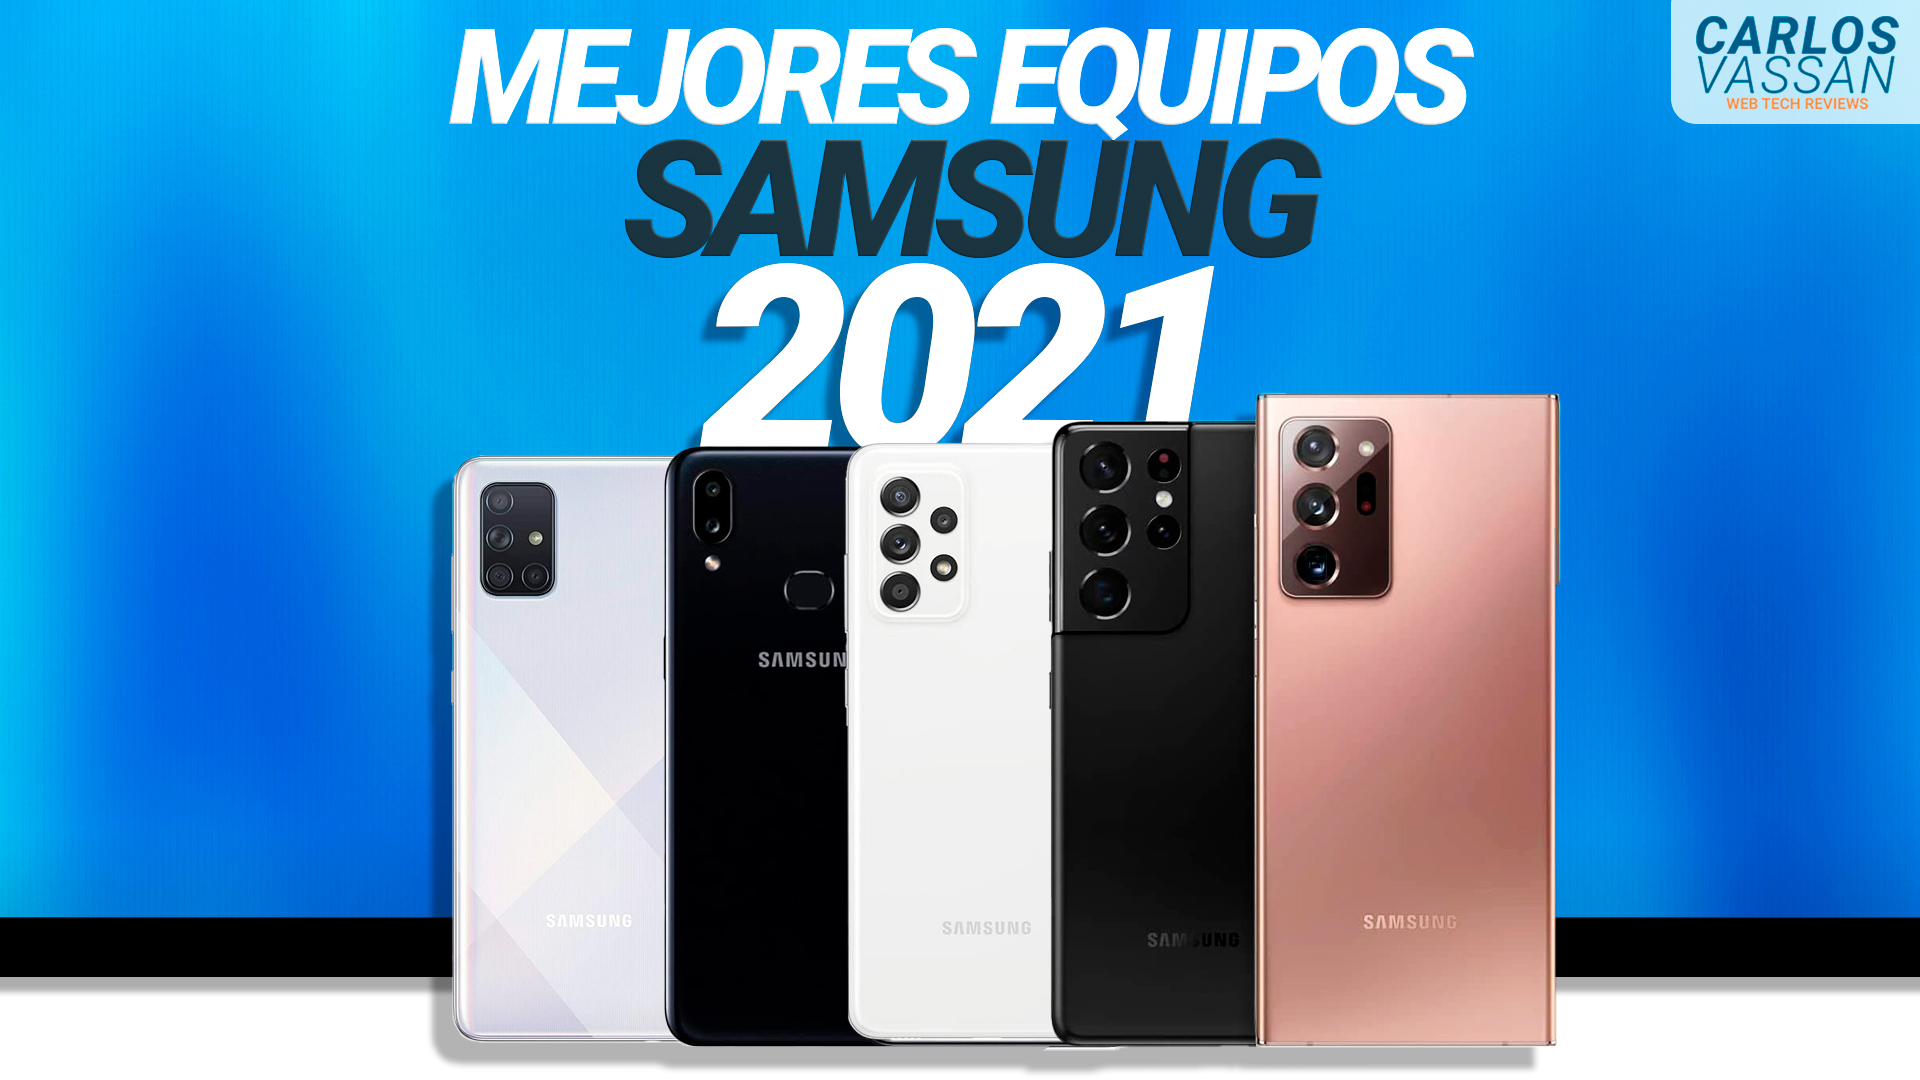 Los mejores celulares Samsung Edición 2021 Carlos Vassan